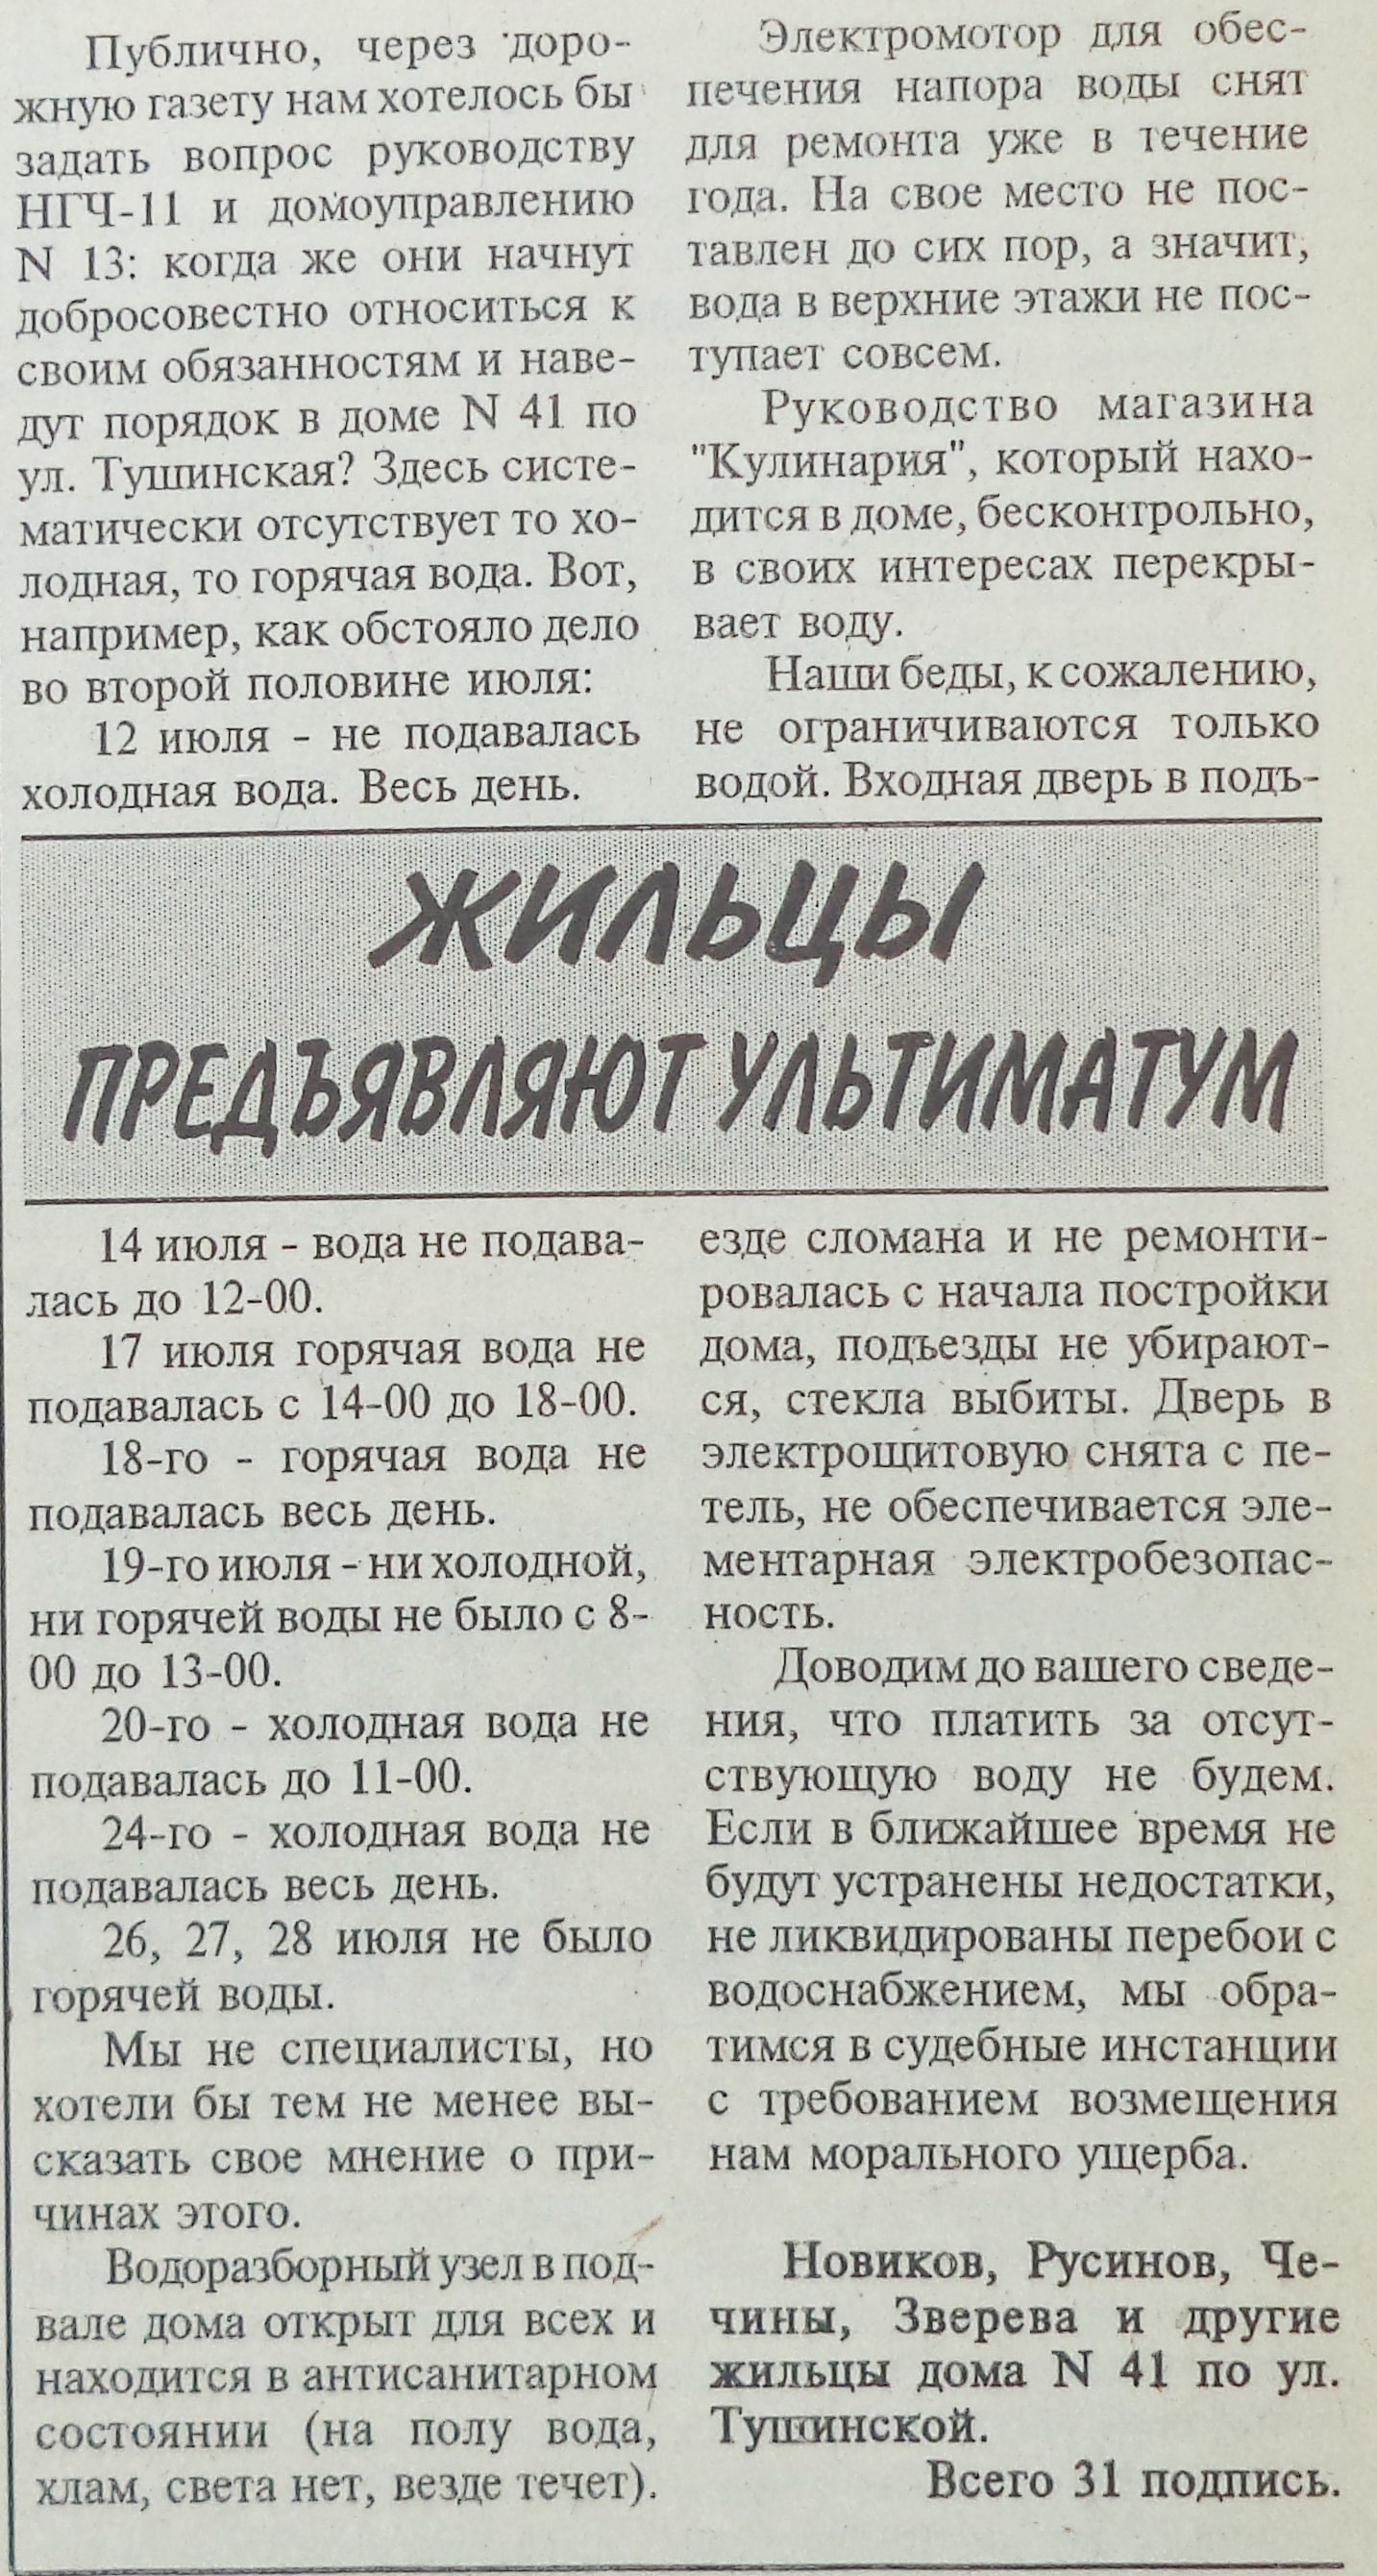 Bolshevistskoe_znamya-1995-8_avgusta-min